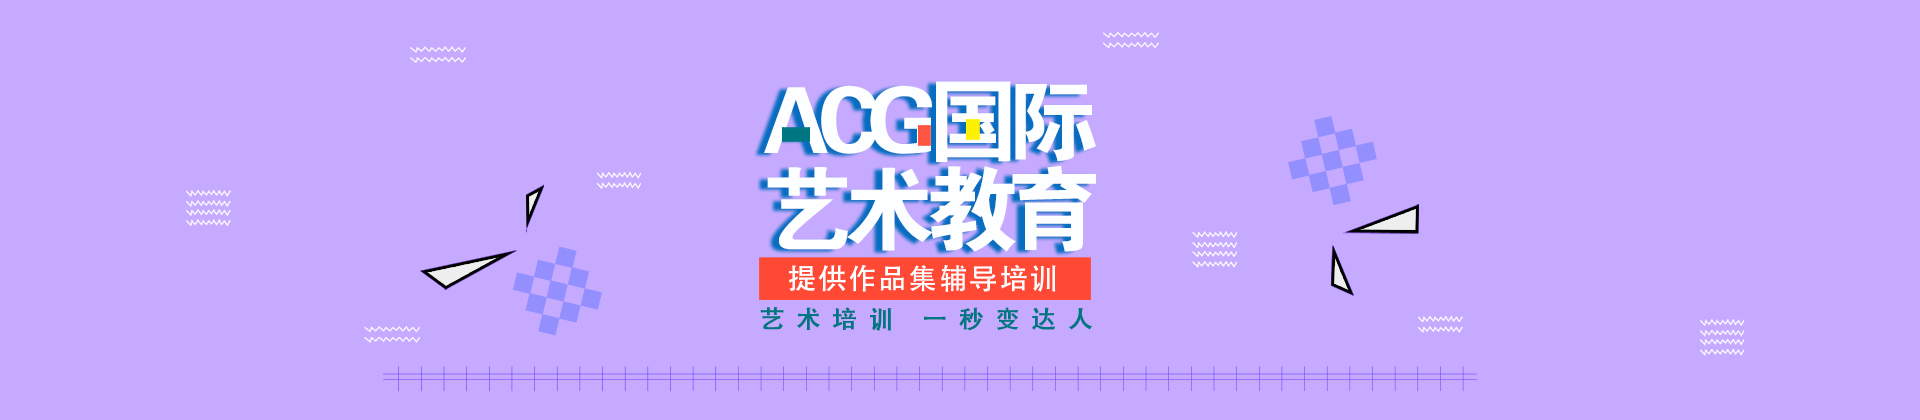 ACG国际艺术留学